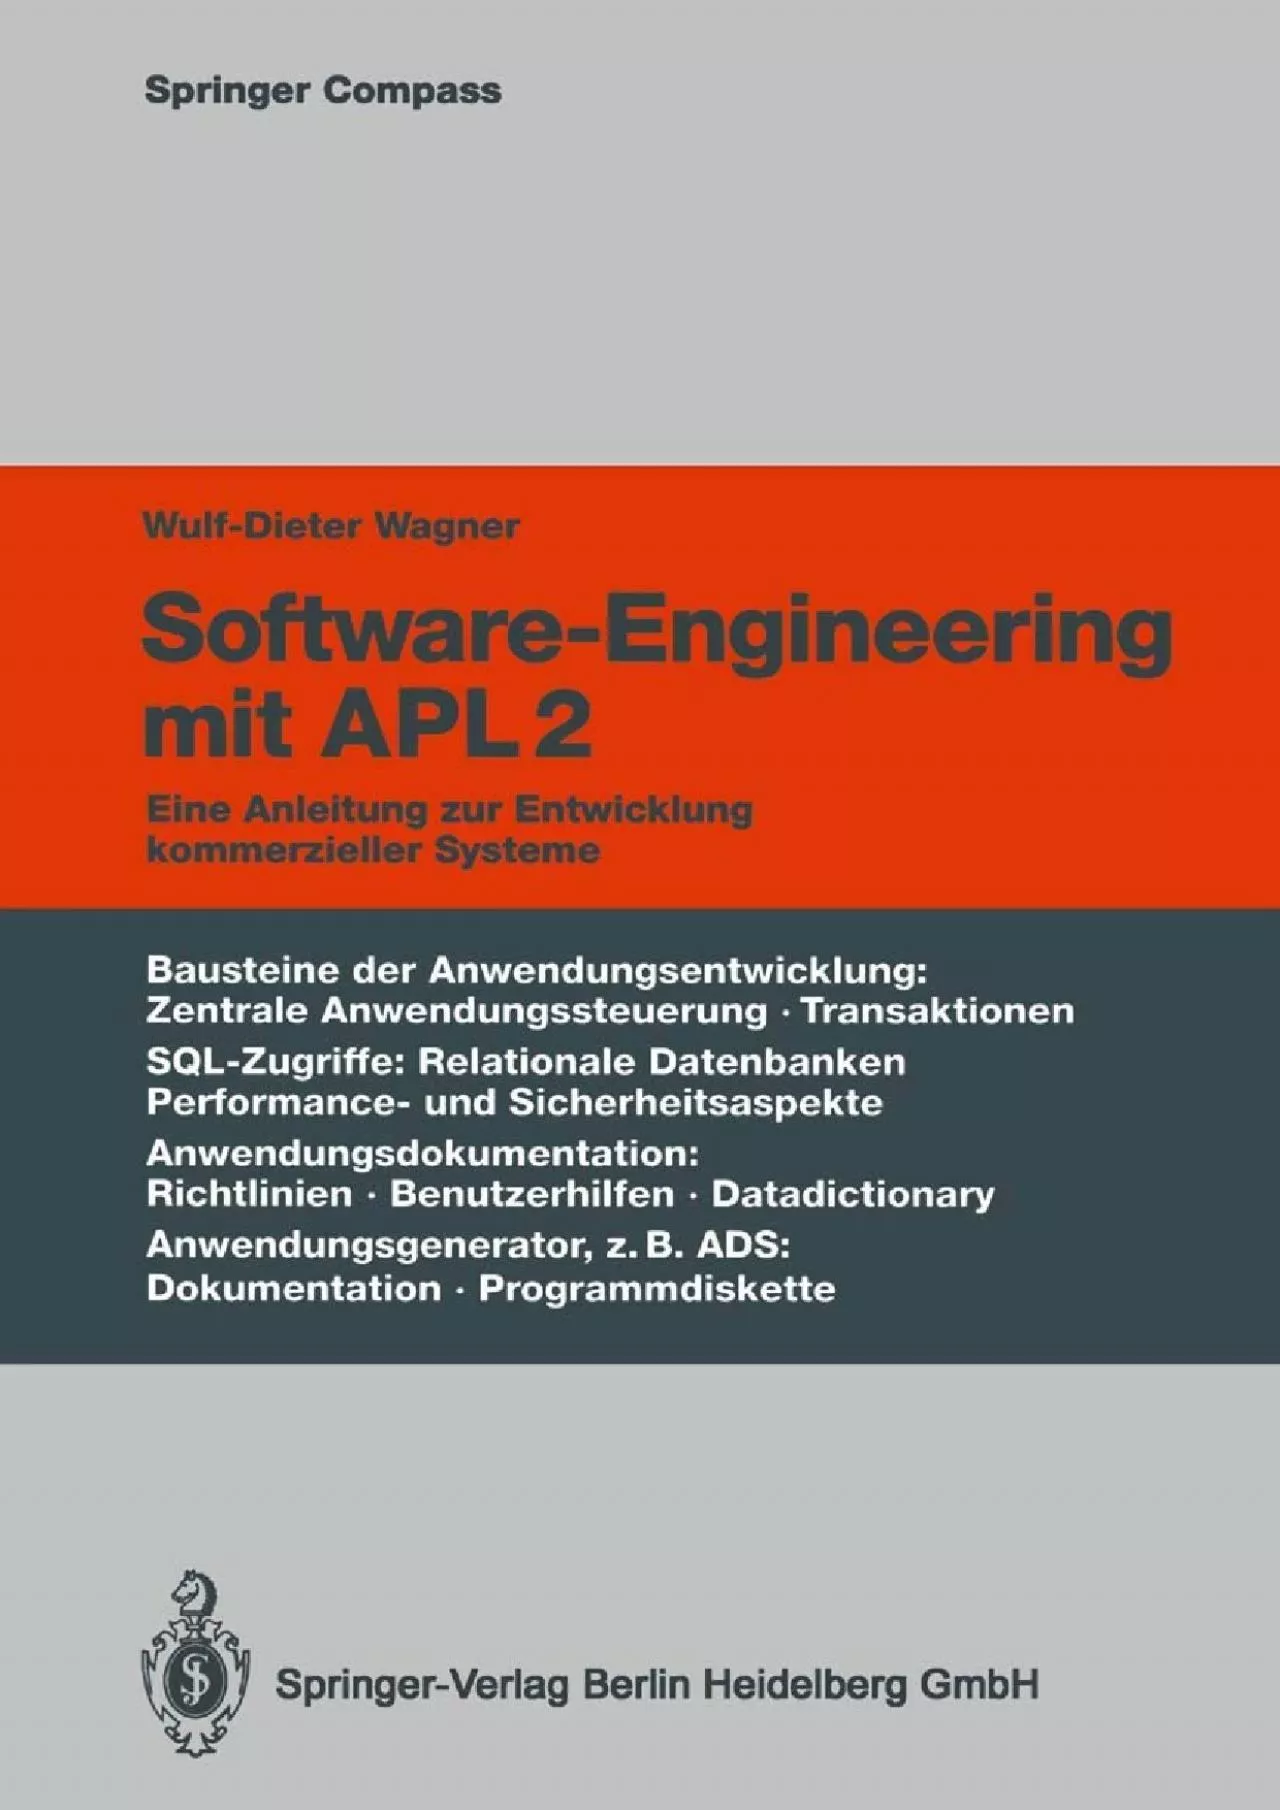 [READING BOOK]-Software-Engineering mit APL2: Eine Anleitung zur Entwicklung kommerzieller